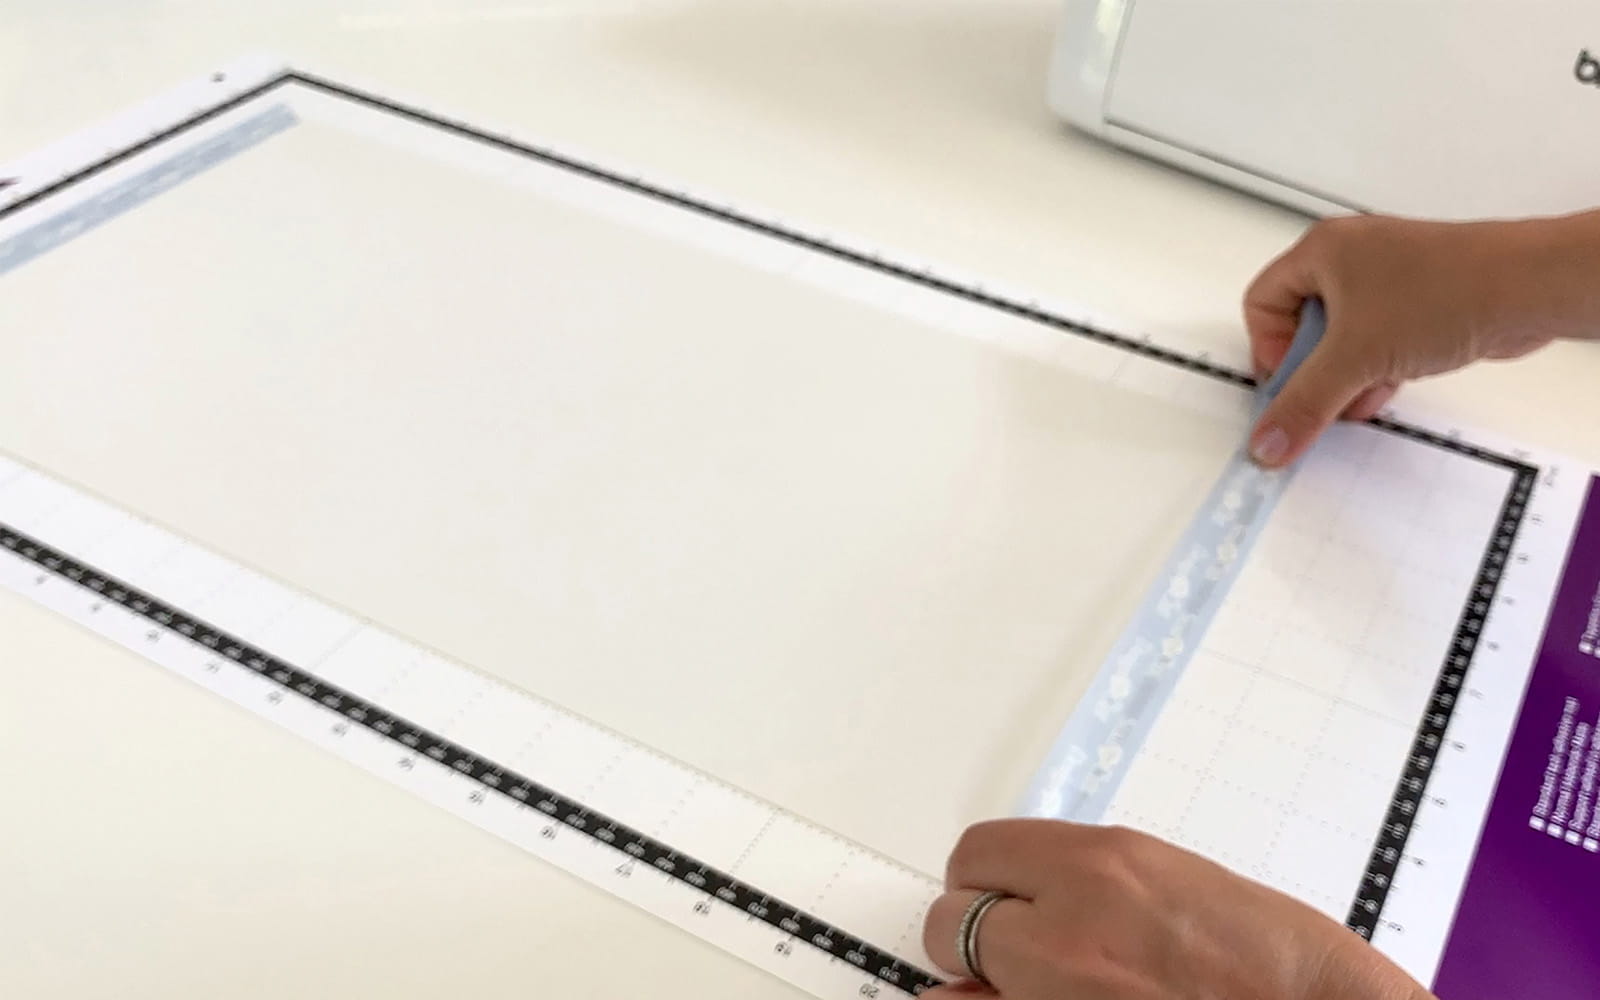 hands washi taping white polystyrene sheet to ScanNCut mat